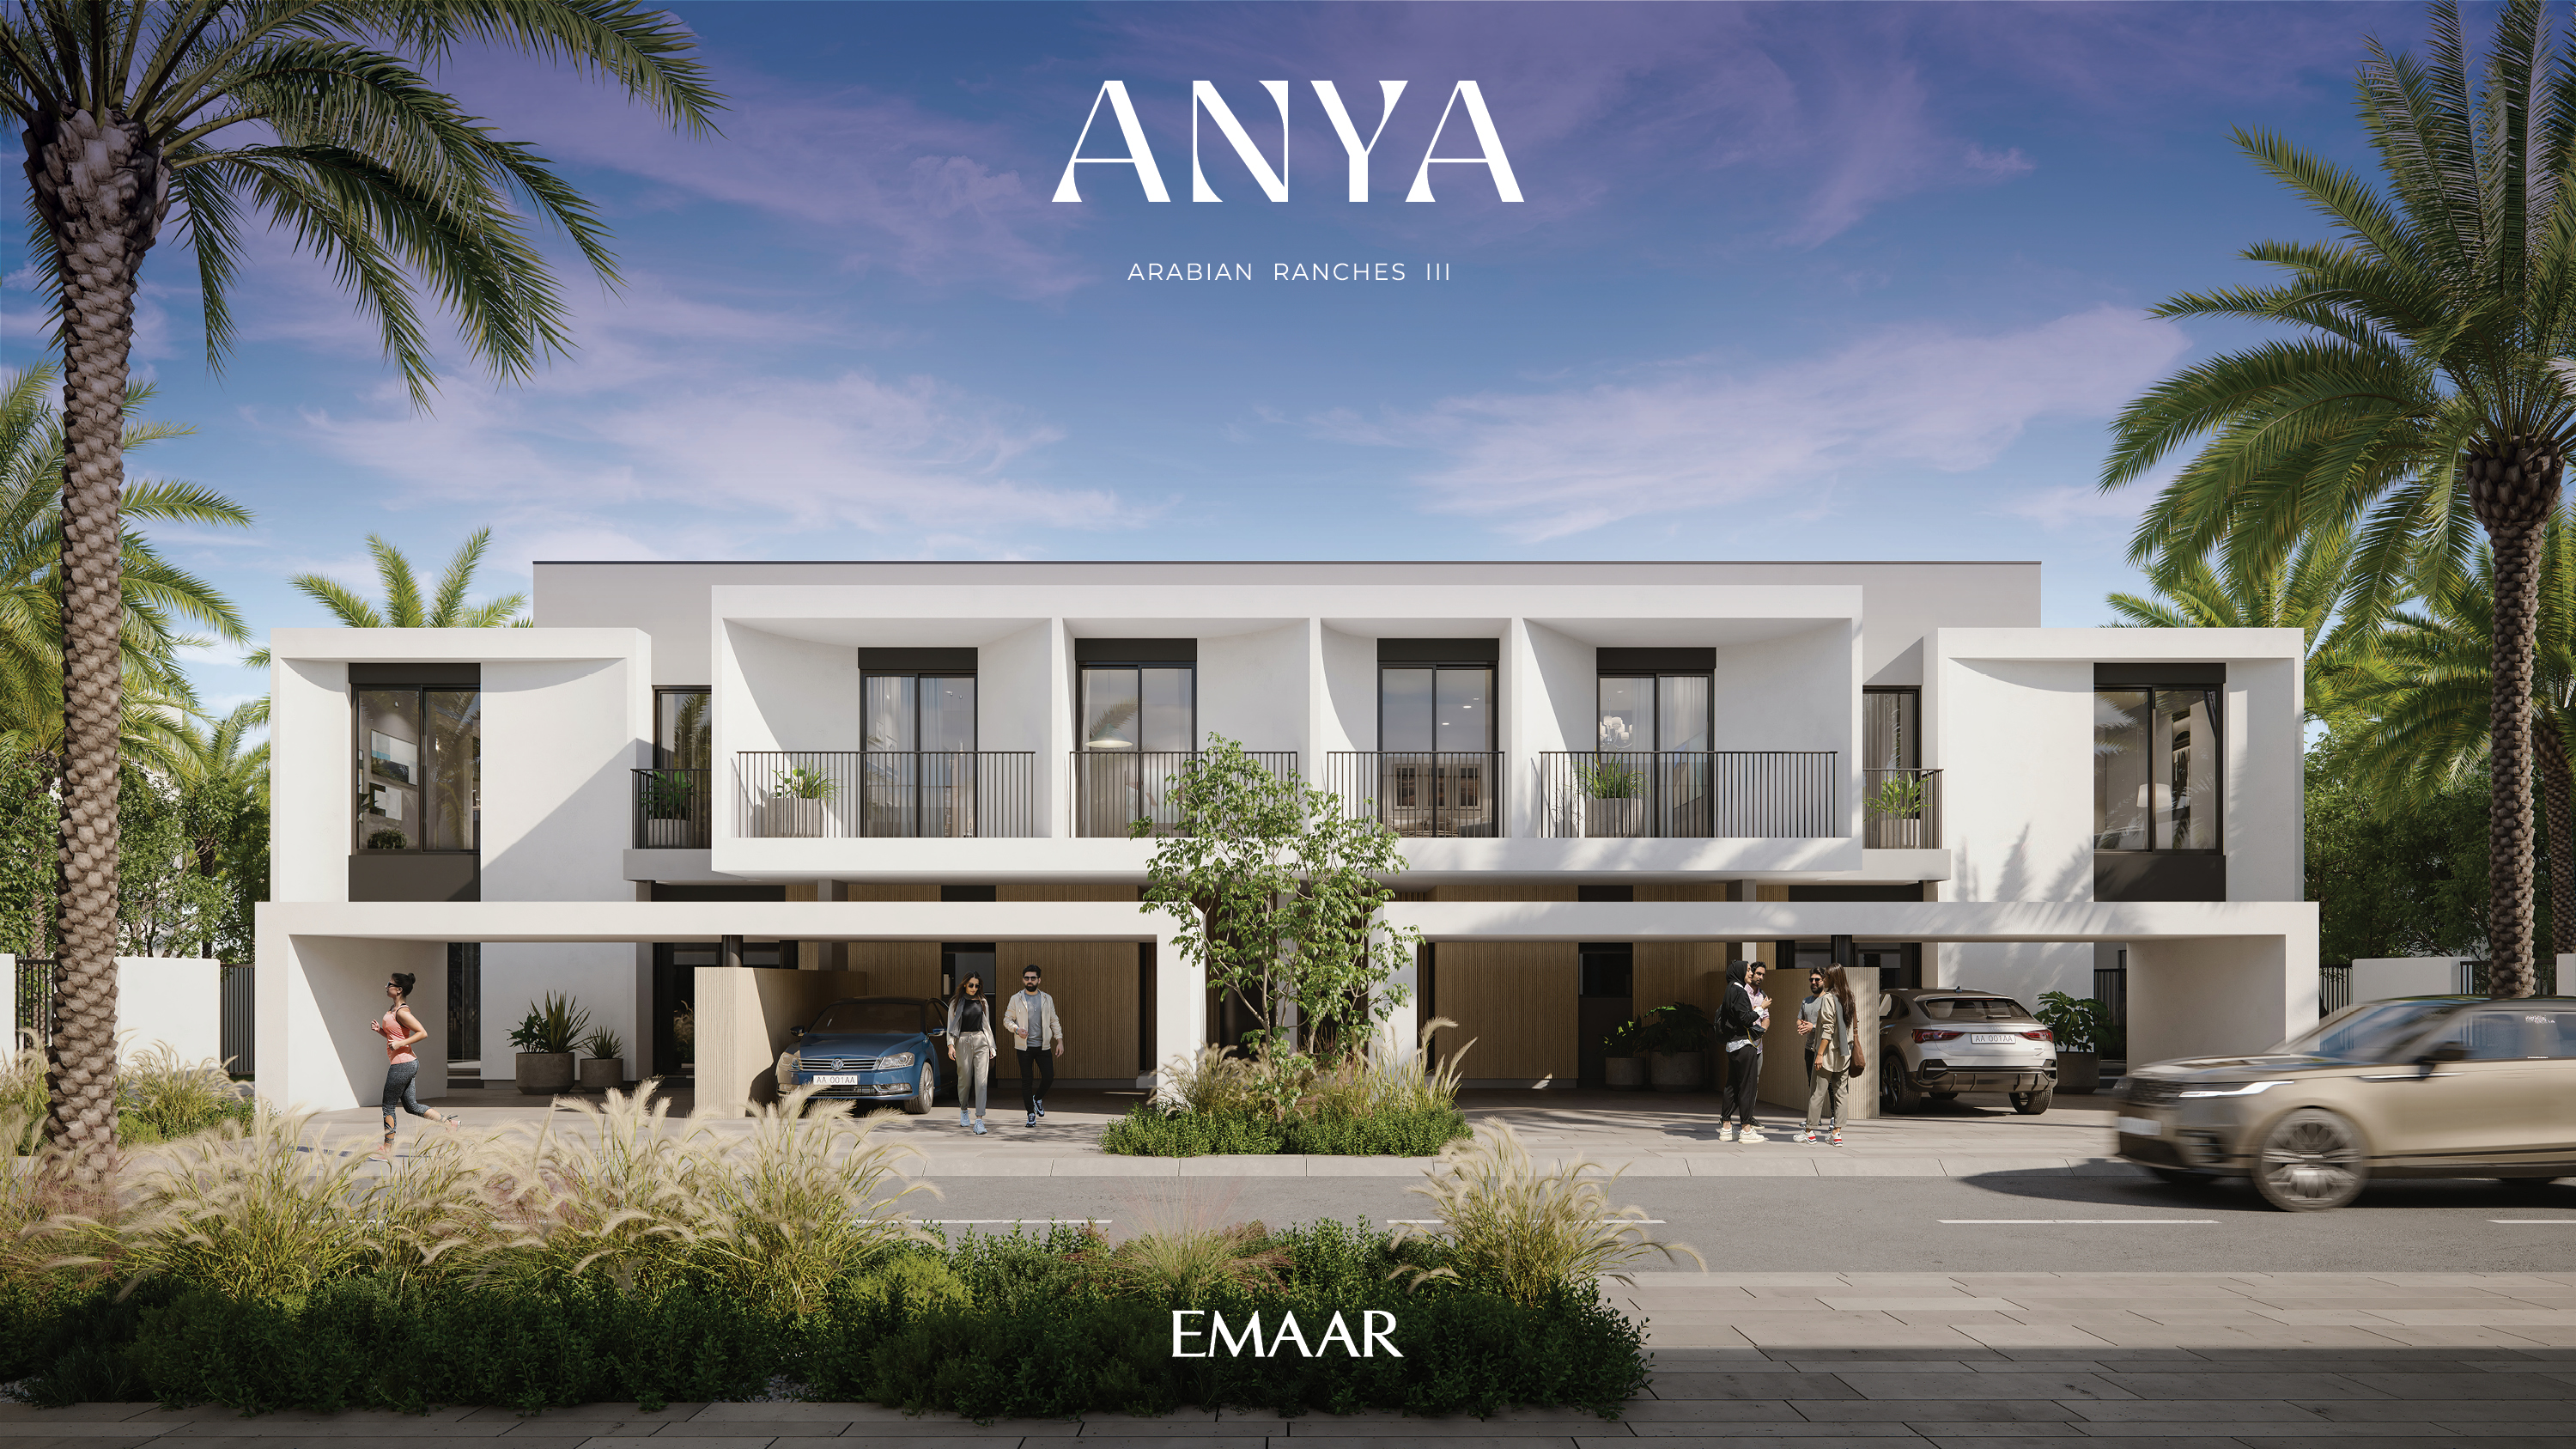 ANYA by Emaar in Arabian Ranches 3, Dubai